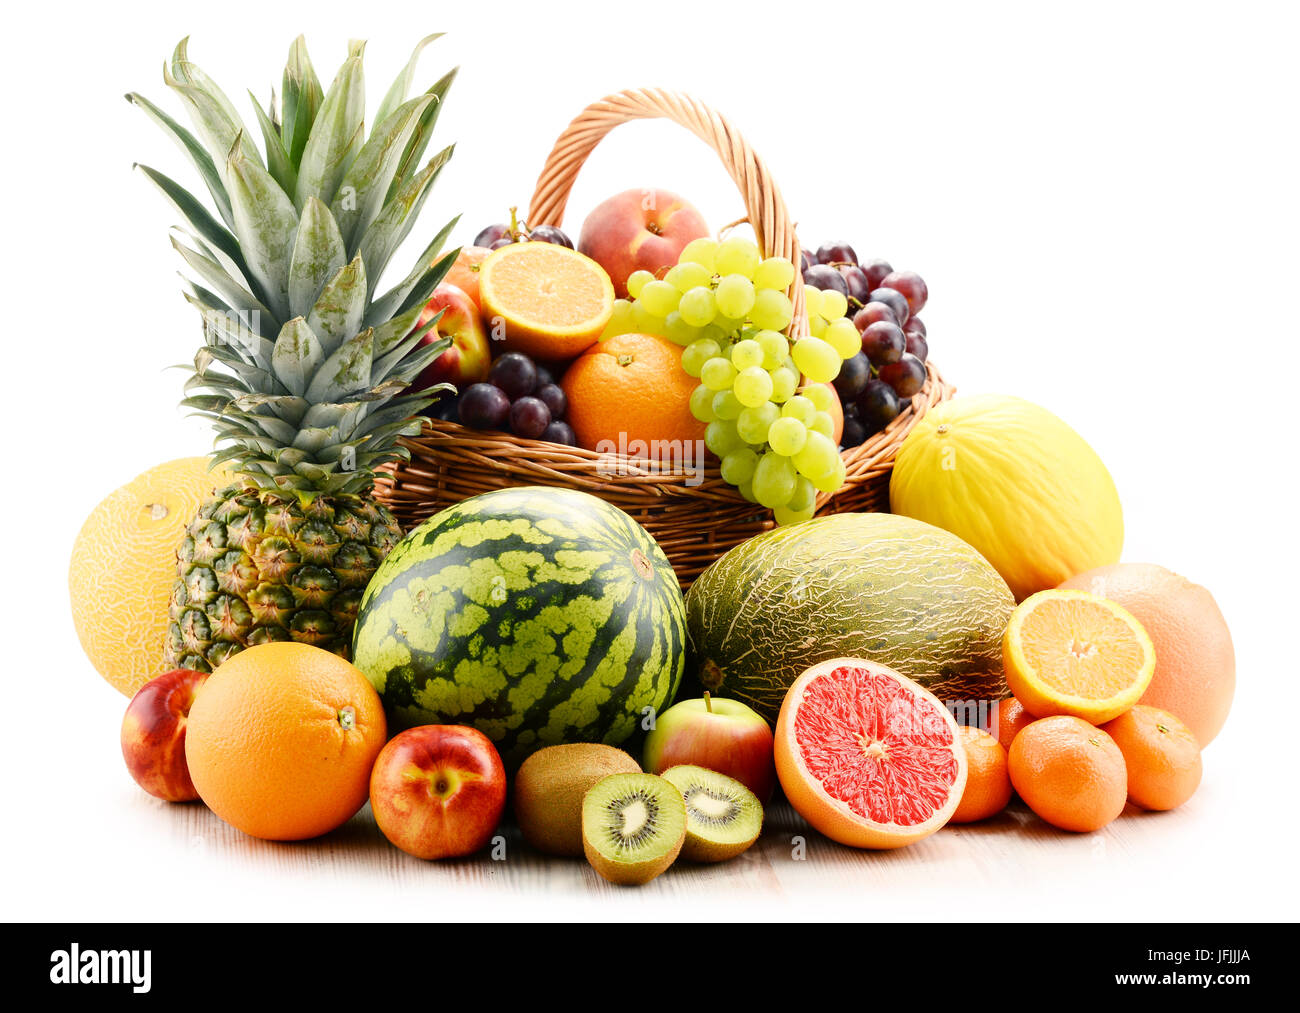 La composition avec un assortiment de fruits. Alimentation équilibrée Banque D'Images